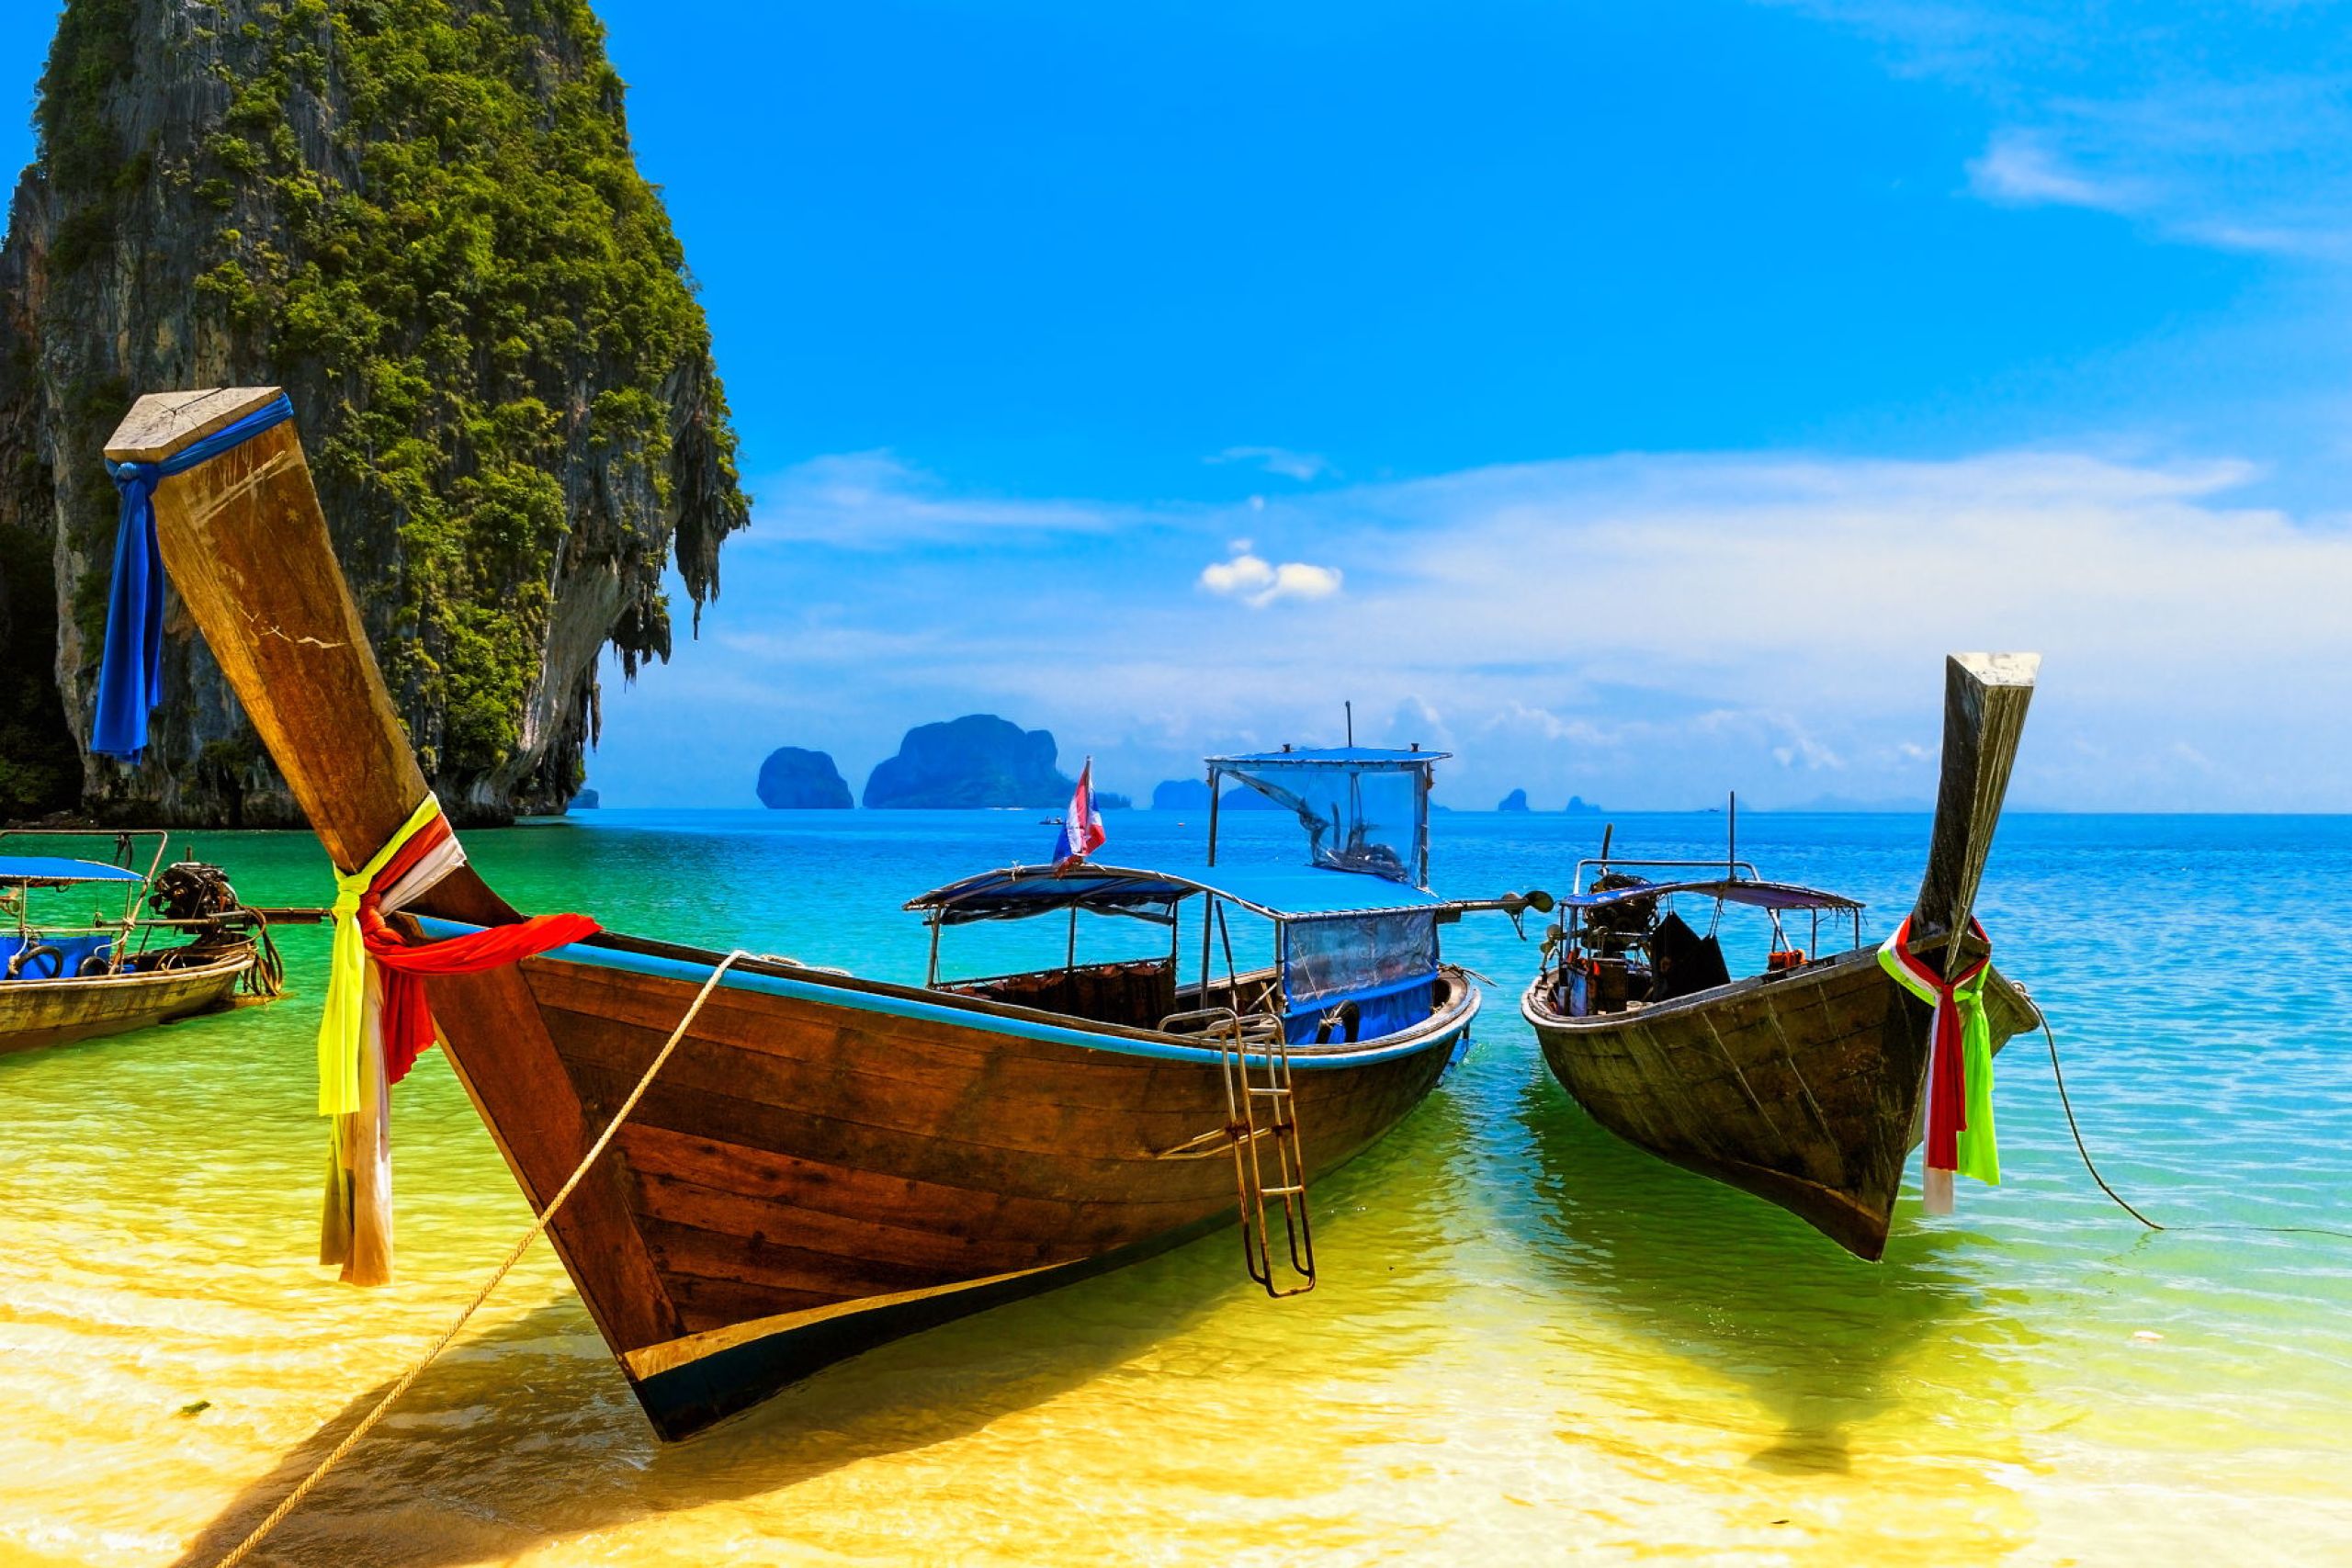 Paradis og strand - ren idyl på rejse i Thailand